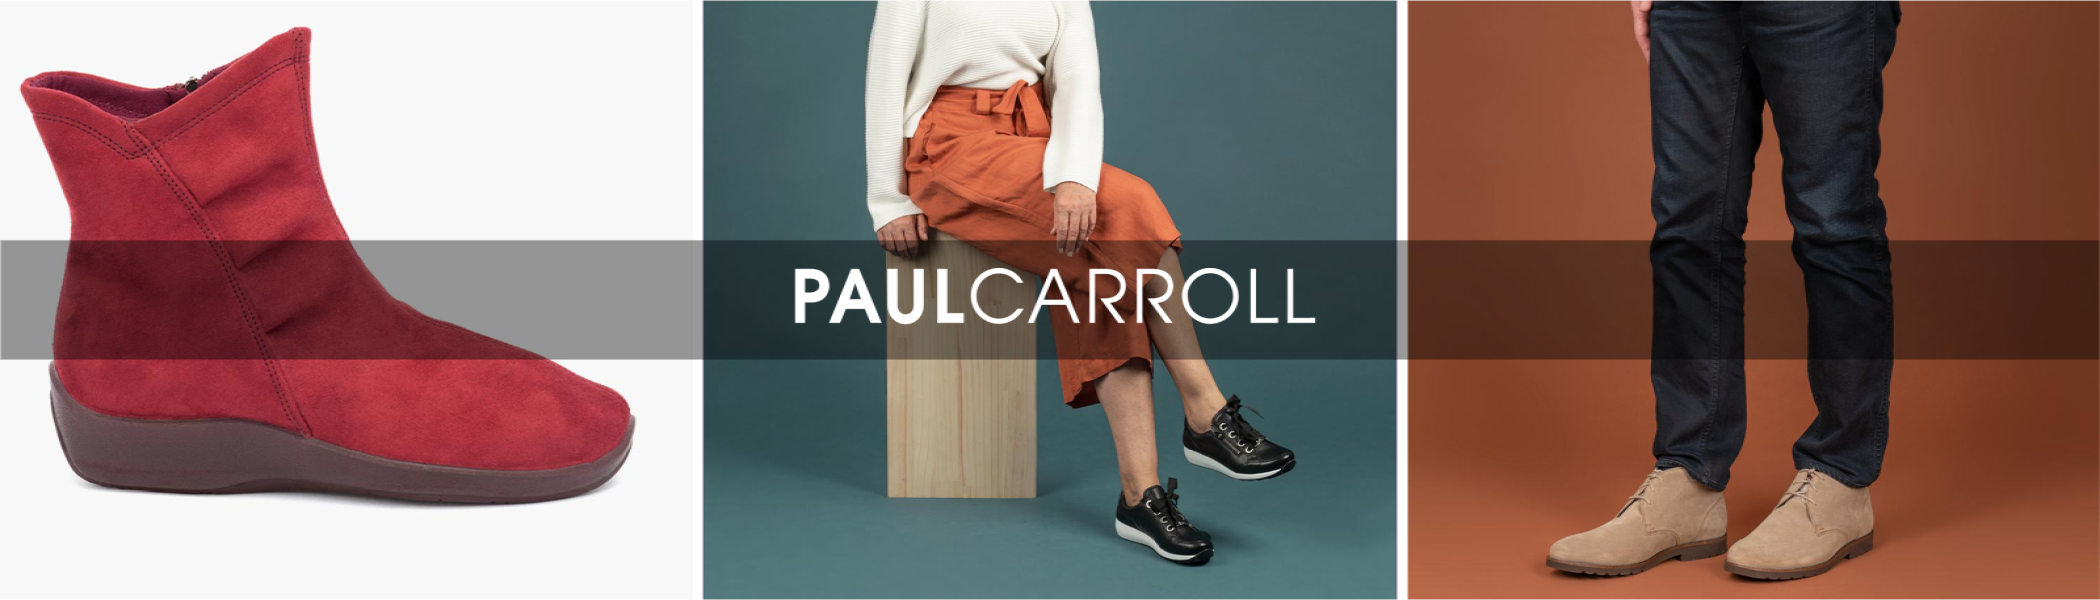 Paul Carroll